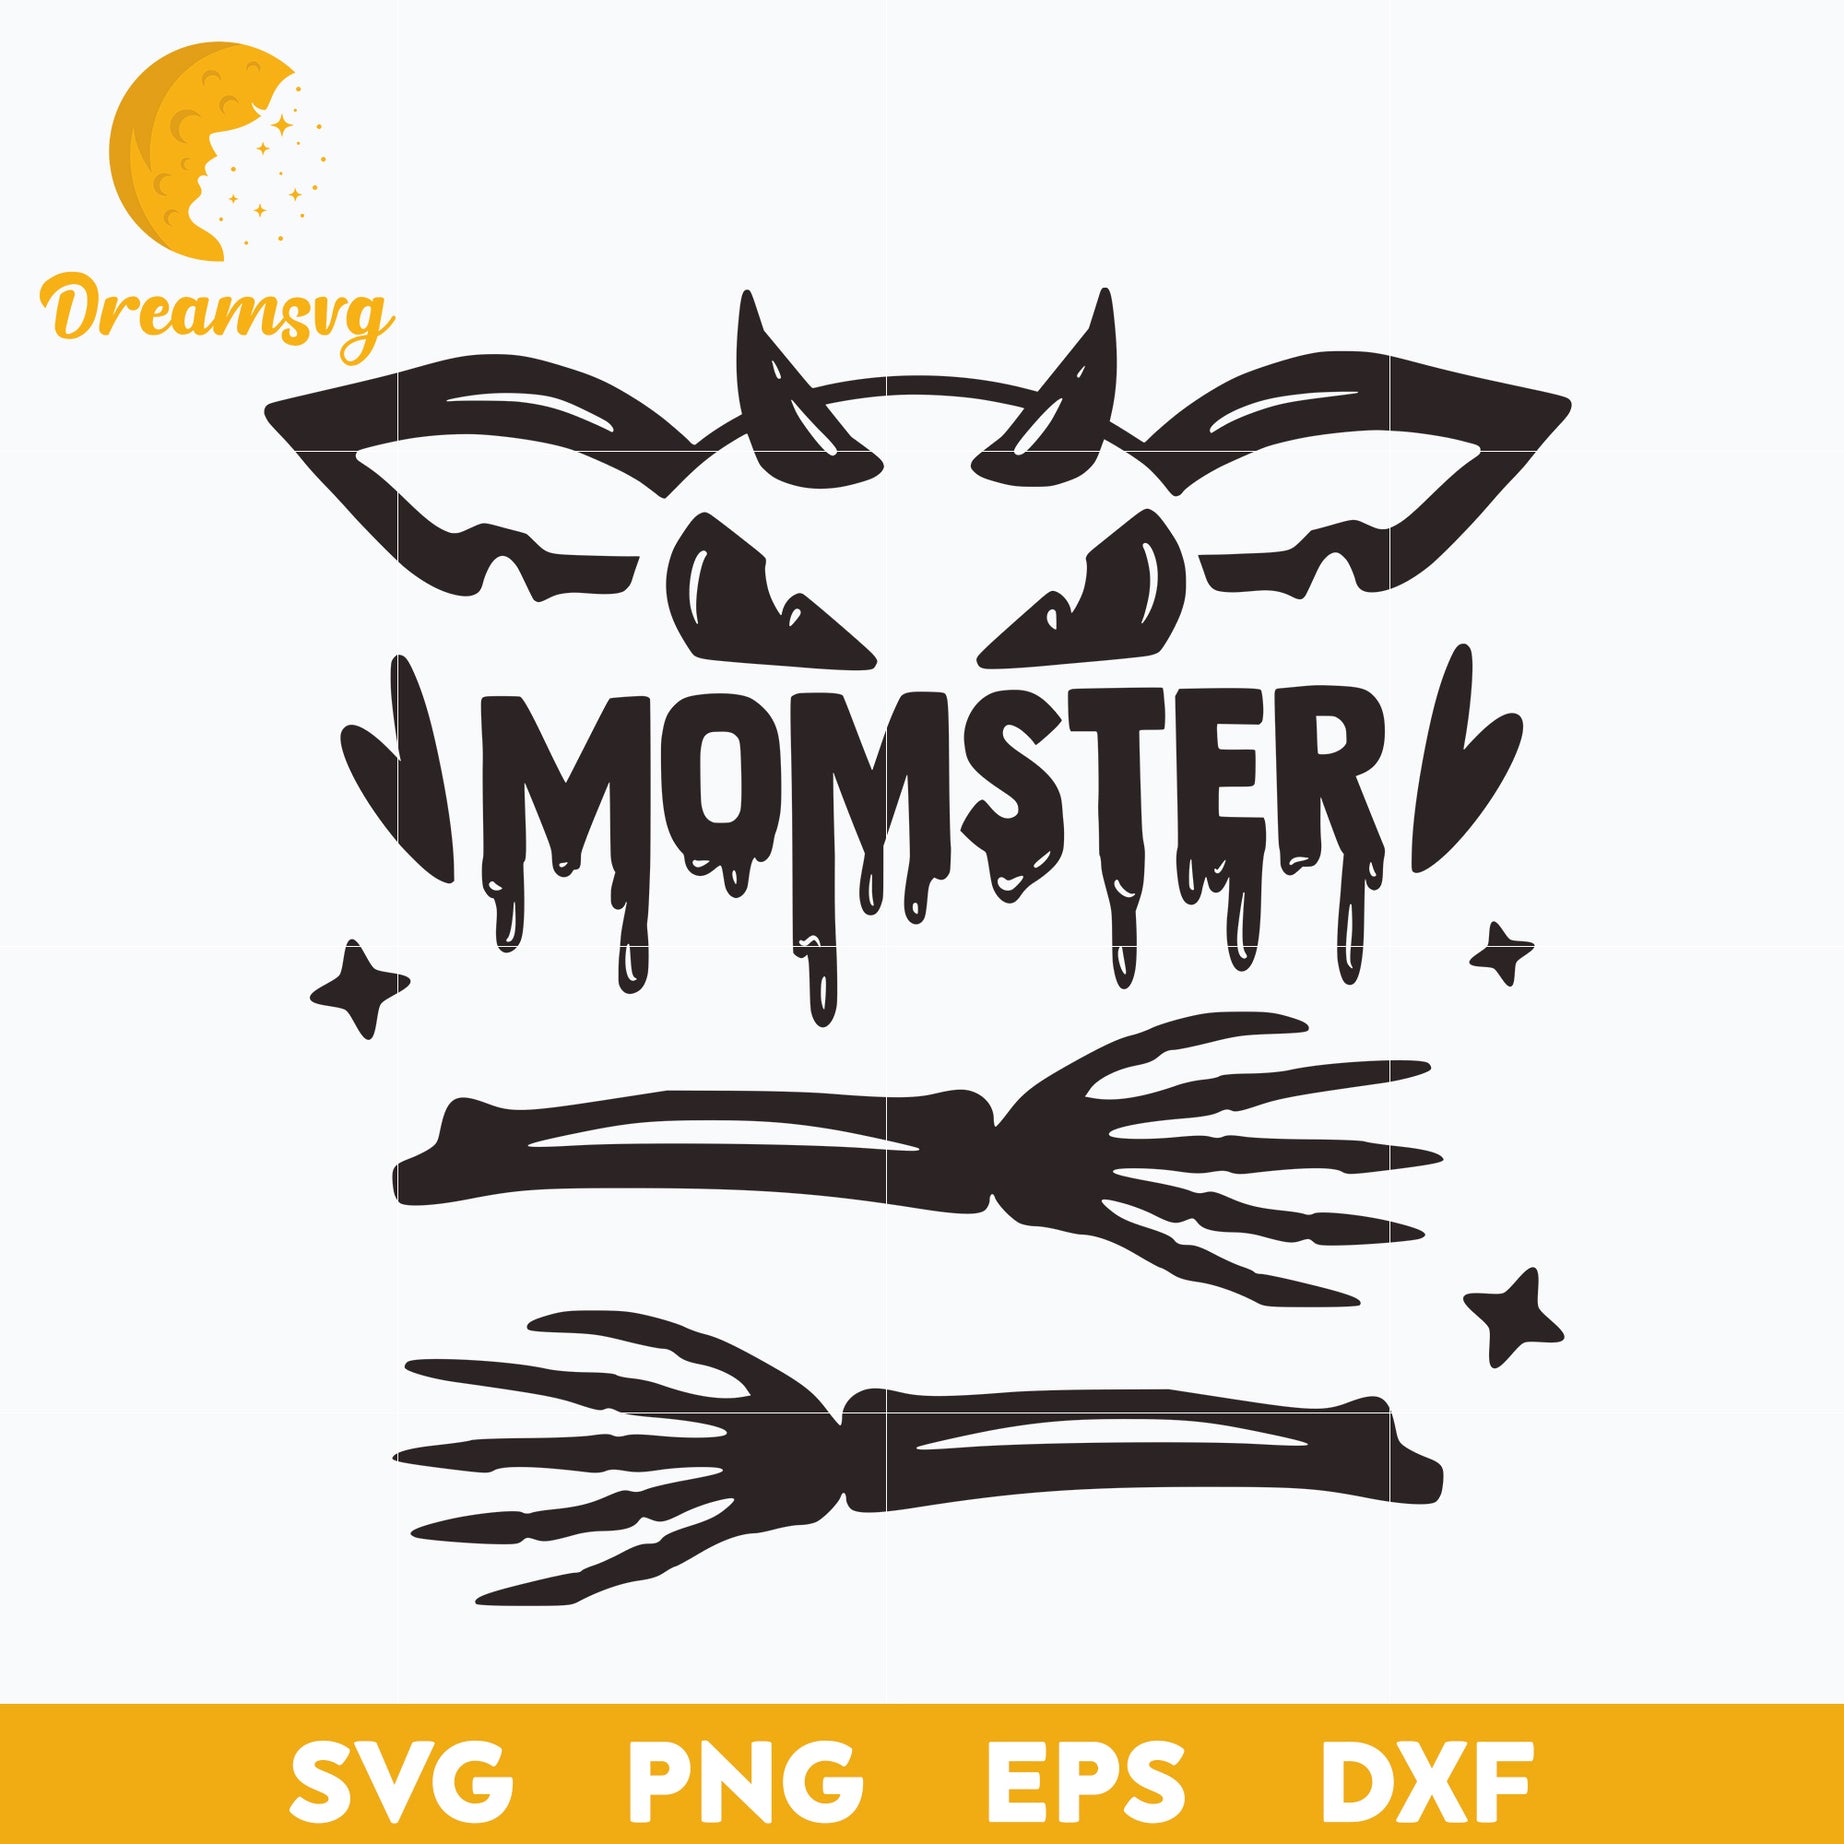 Momster SVG, Halloween svg, png, dxf, eps digital file.